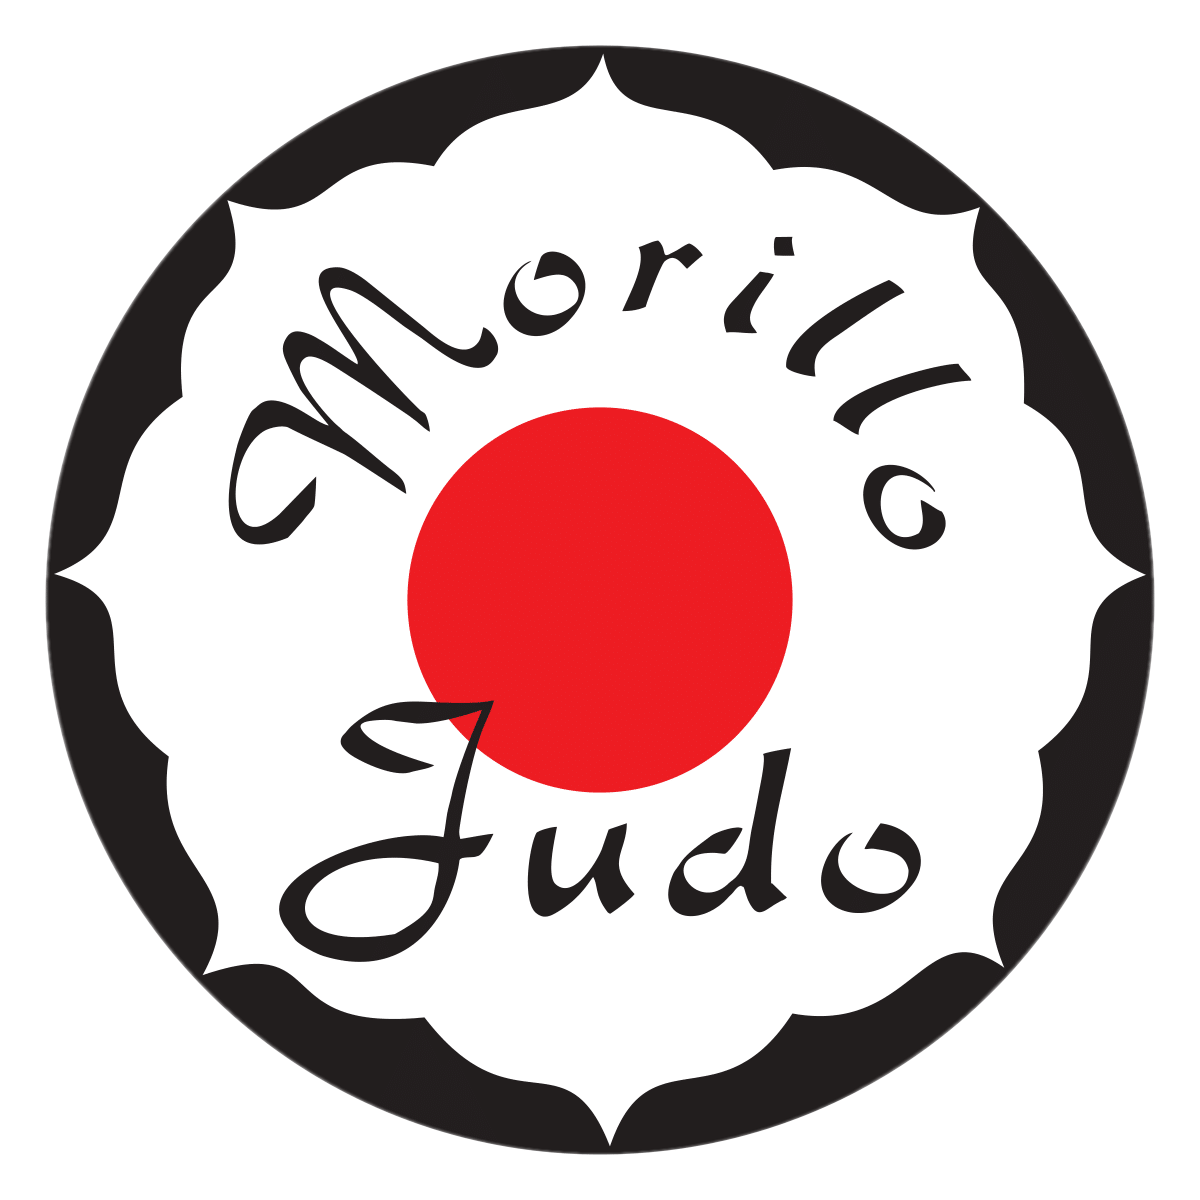 Morillo Judo Club